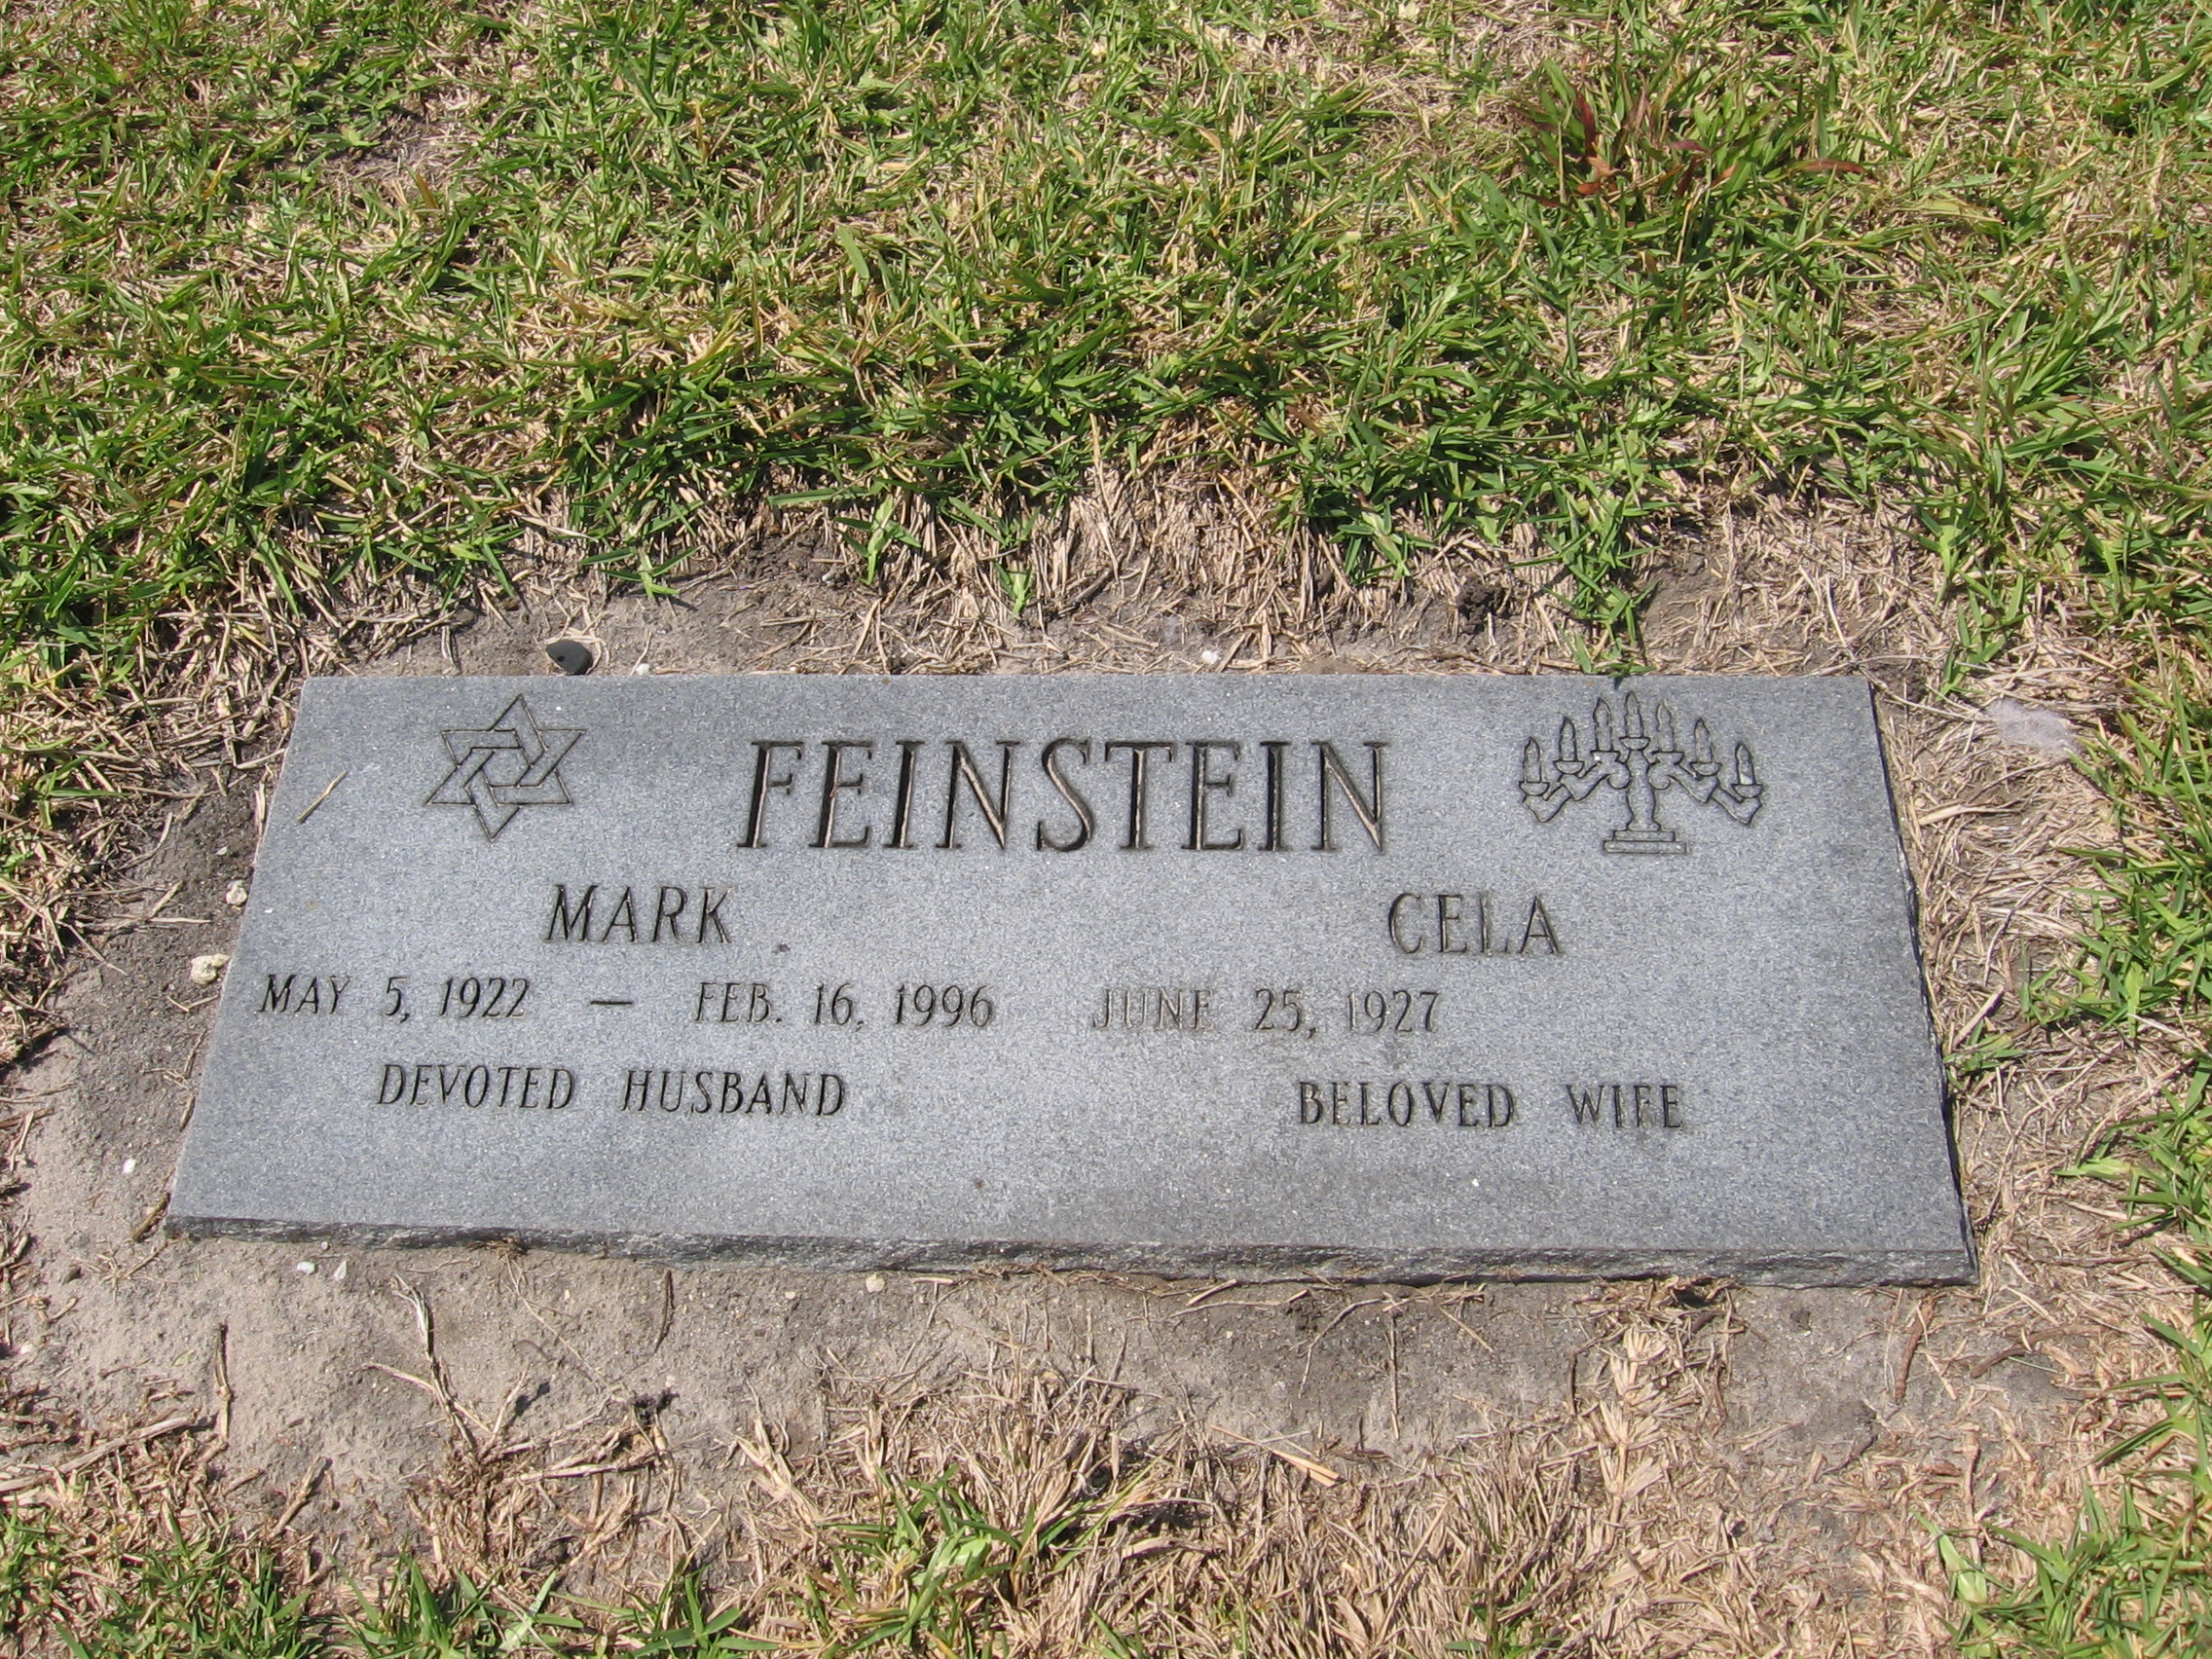 Mark Feinstein